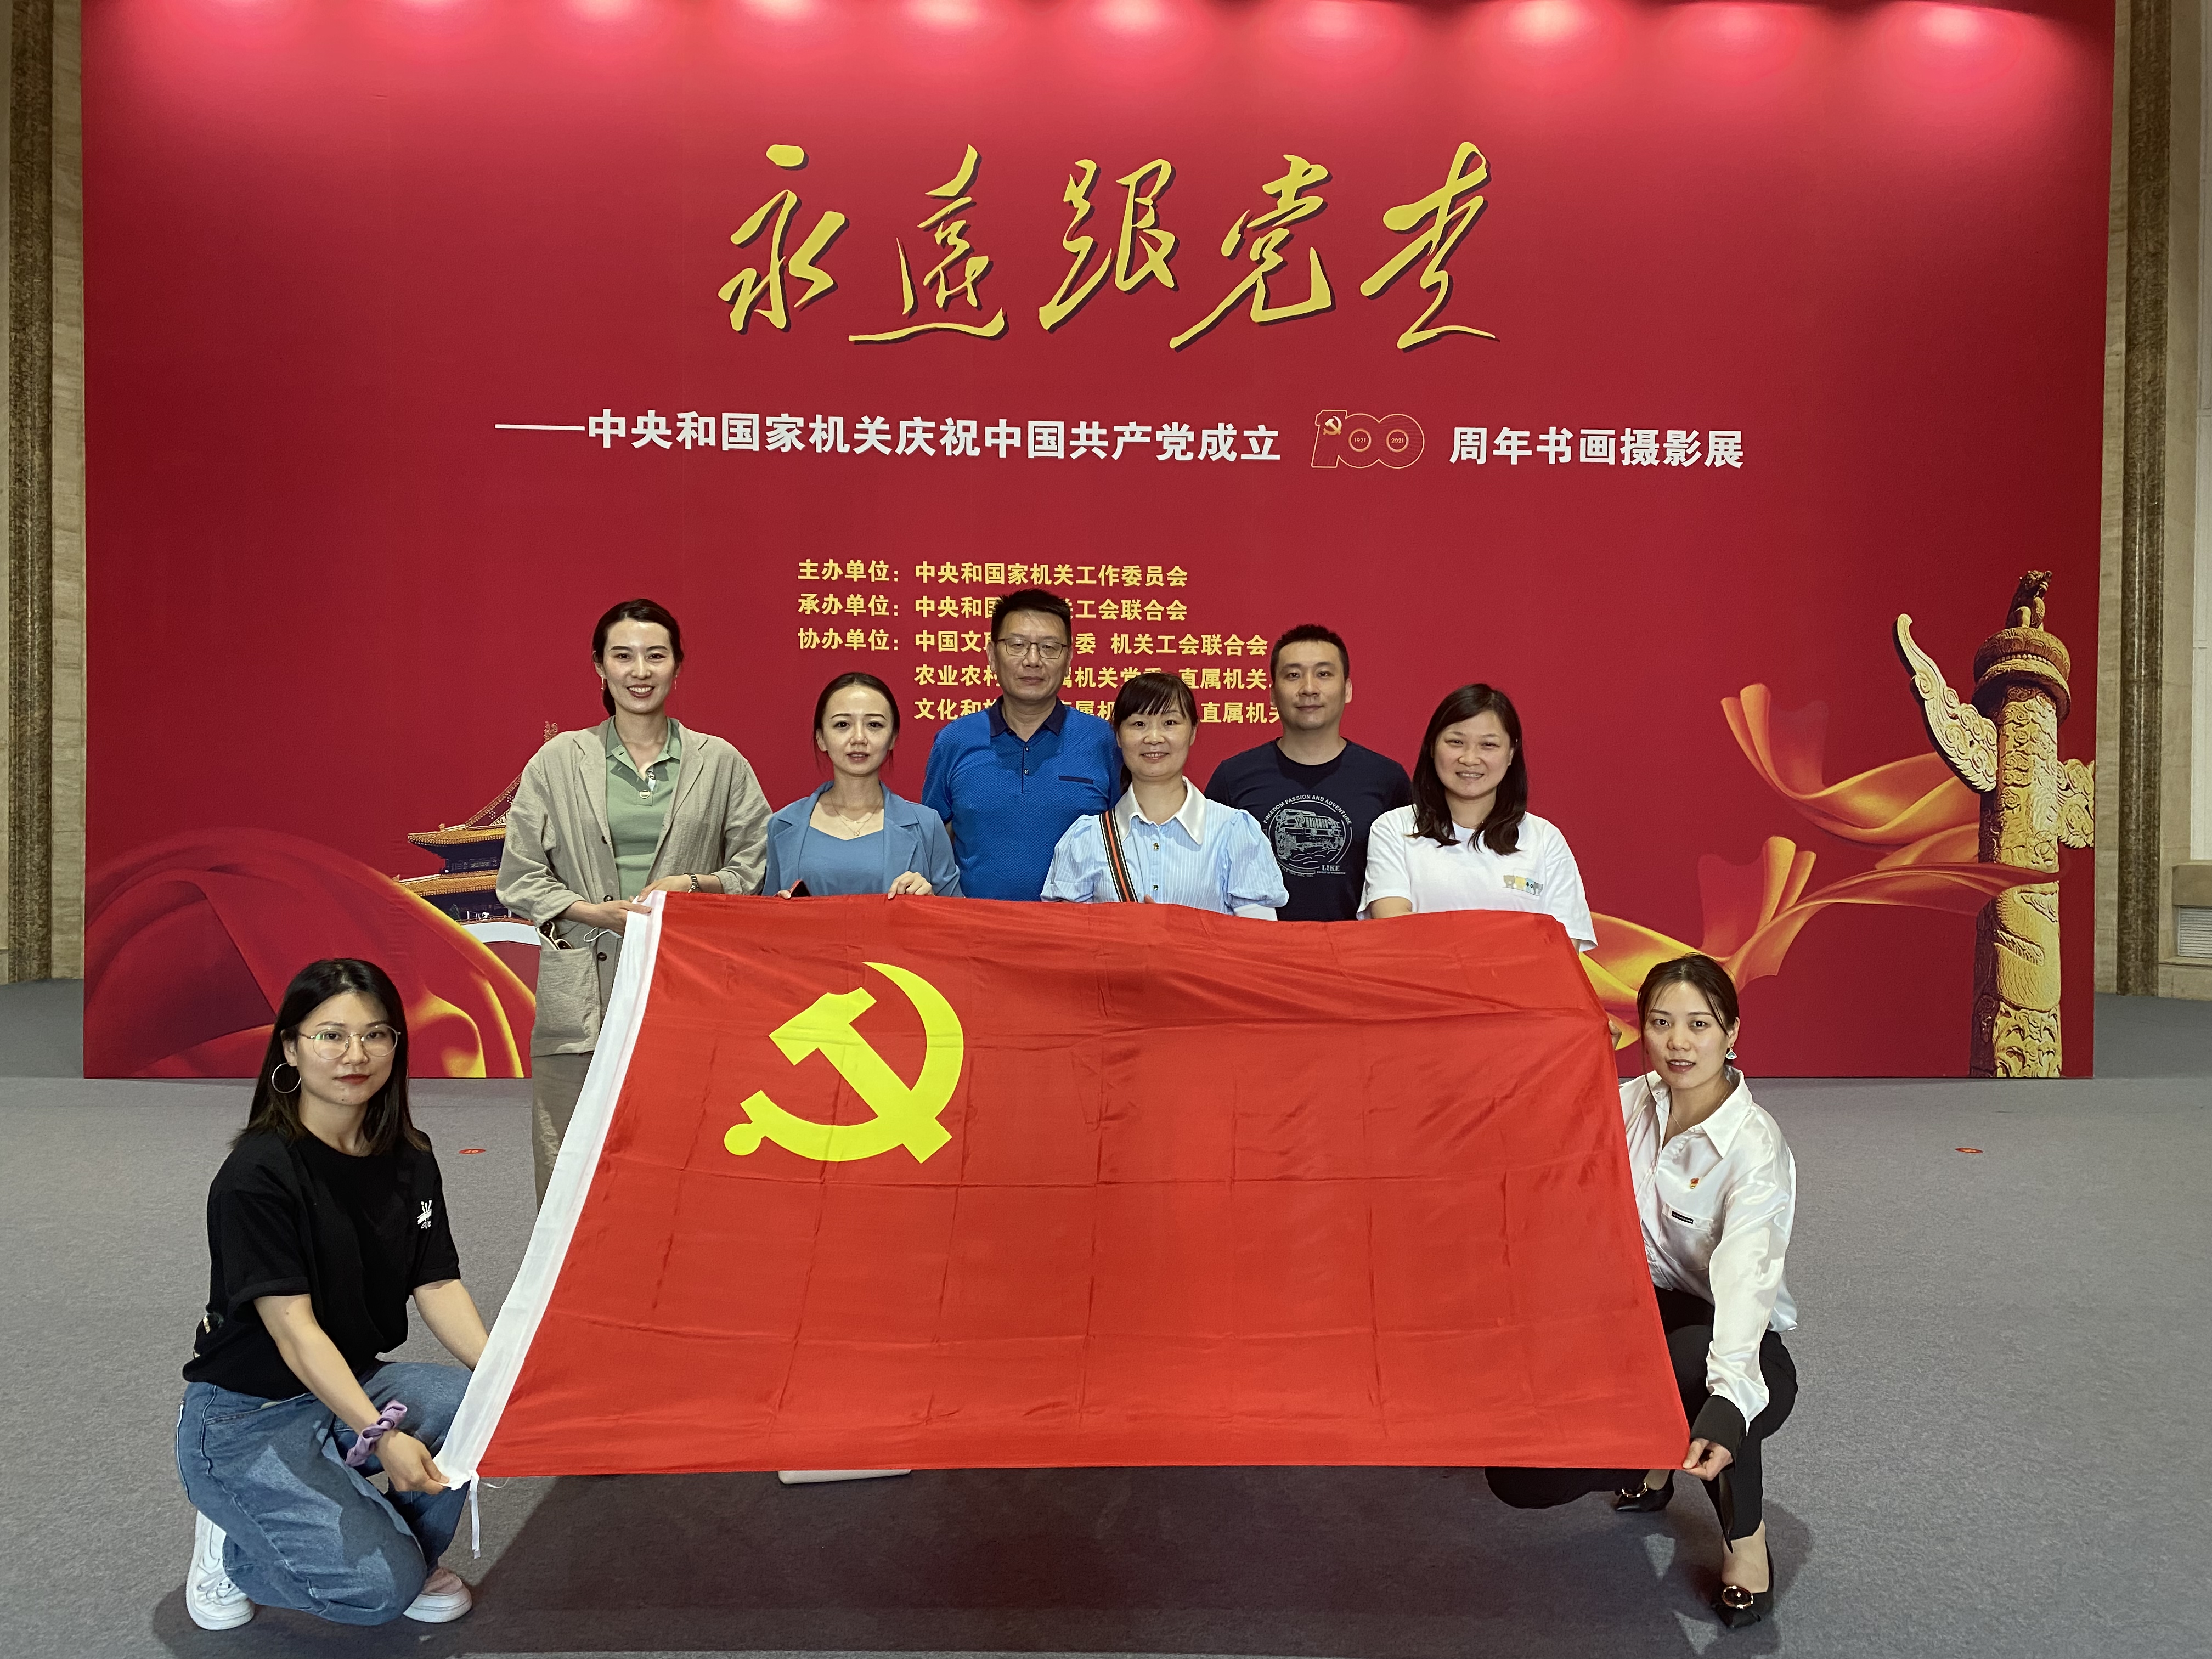 参观“永远跟党走”中央和国家机关庆祝中国共产党成立100周年书画摄影展
